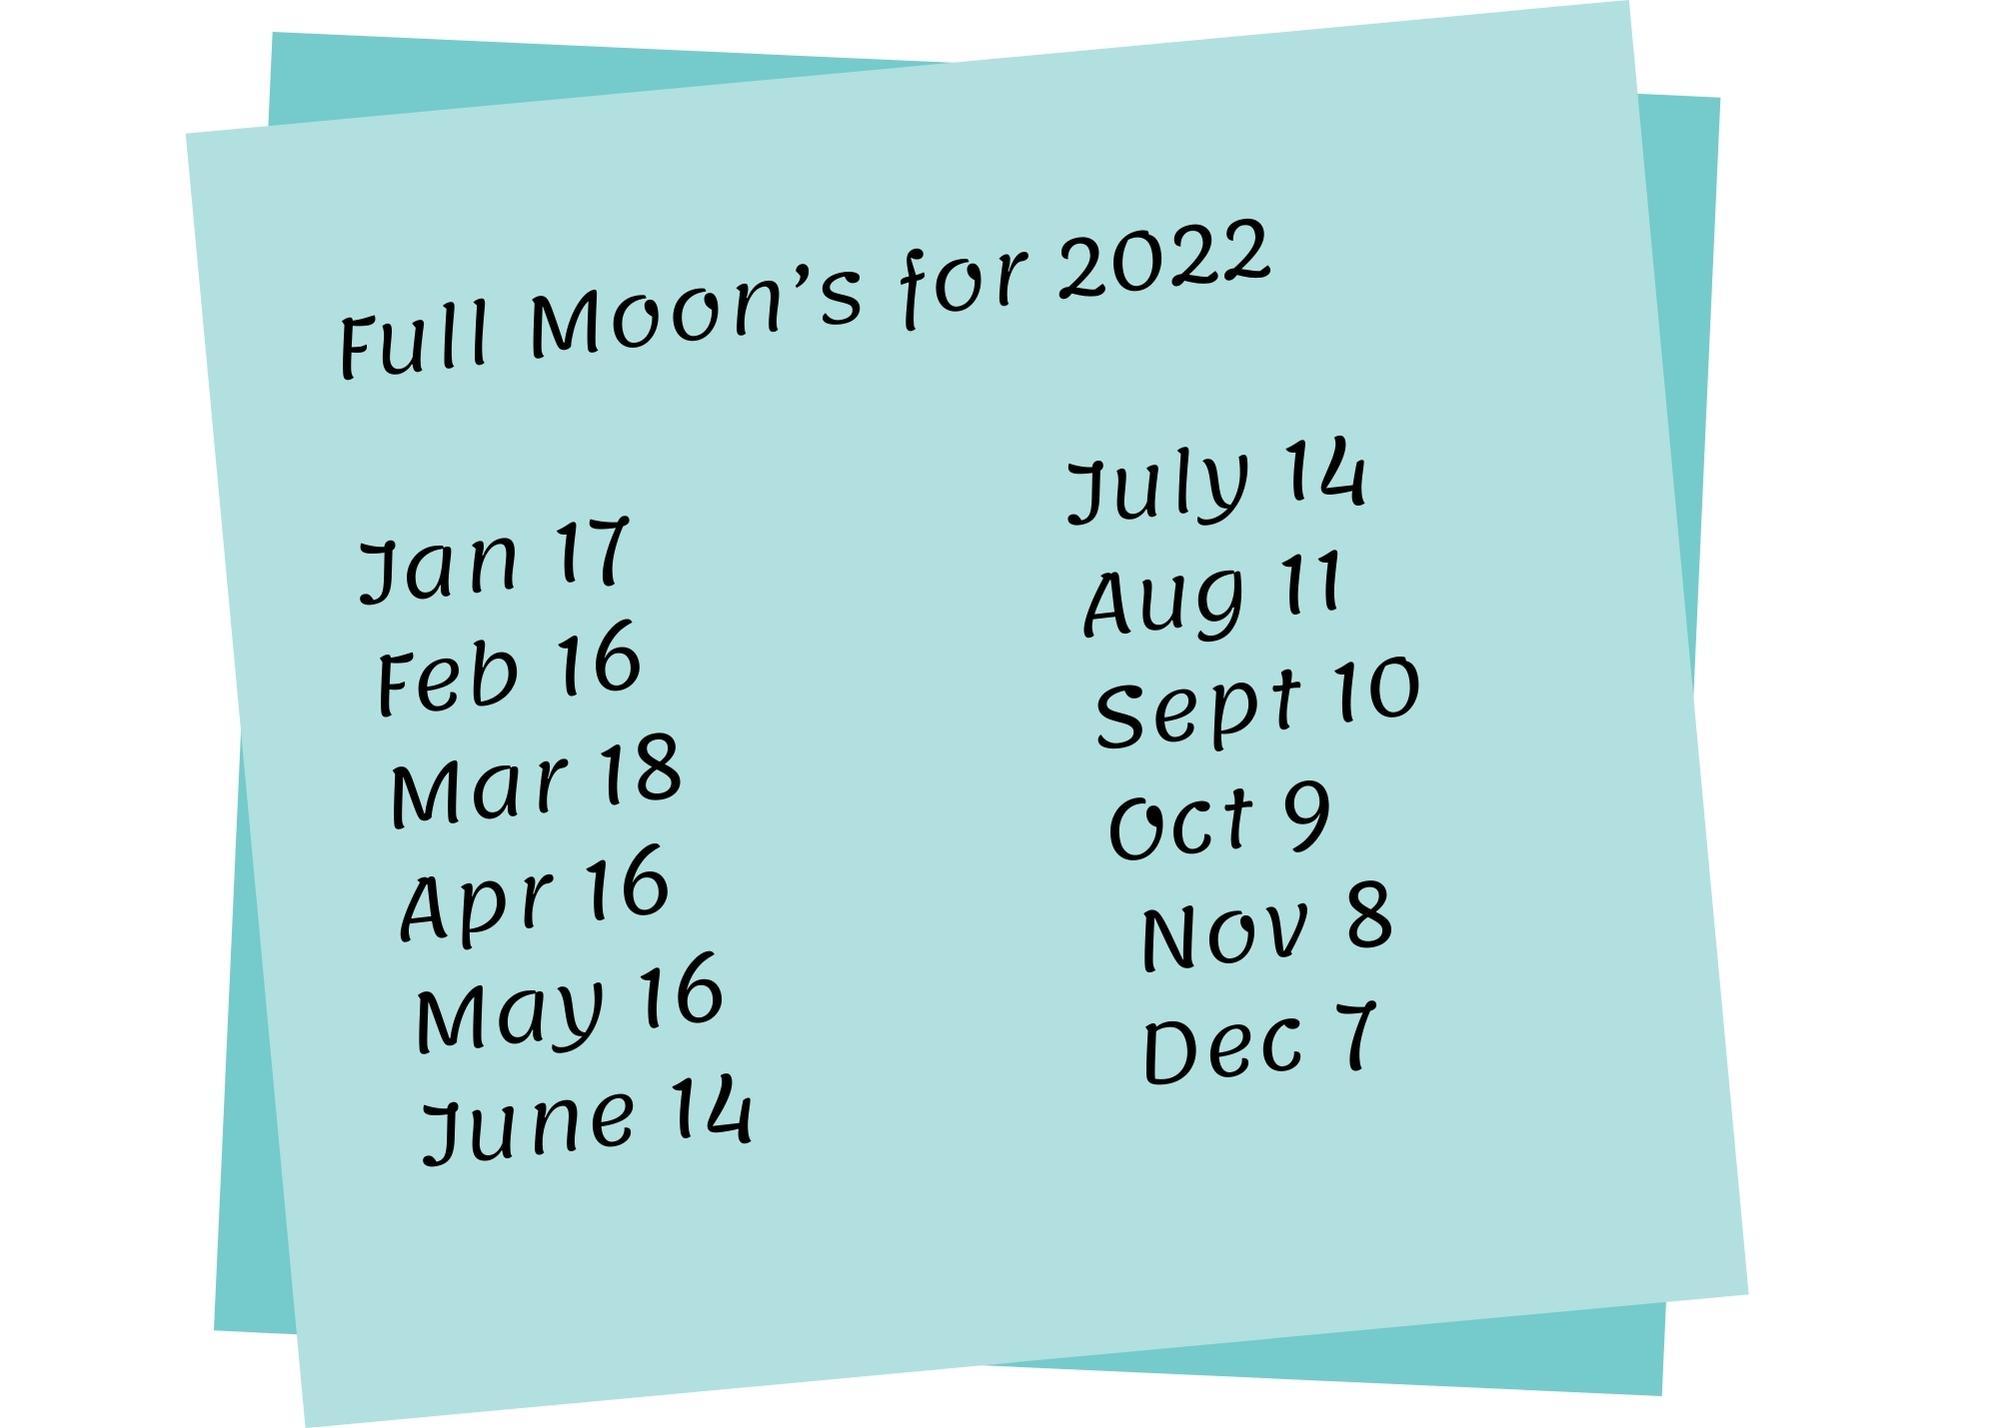 Full Moon 2022 Schedule